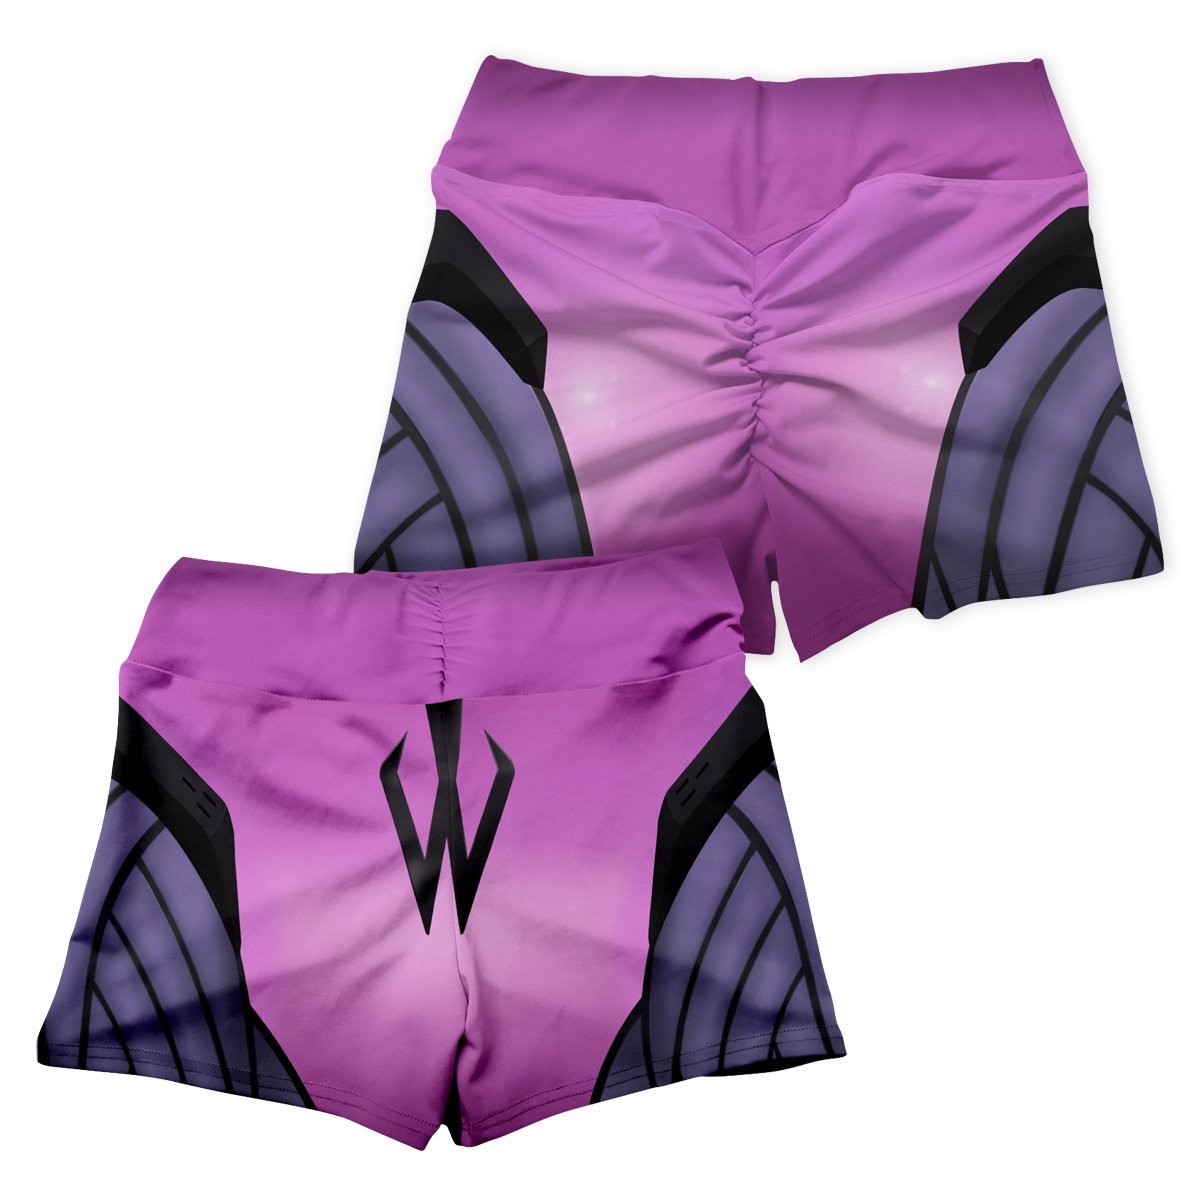 widowmaker summer active wear set 412222 - Anime Swimsuits